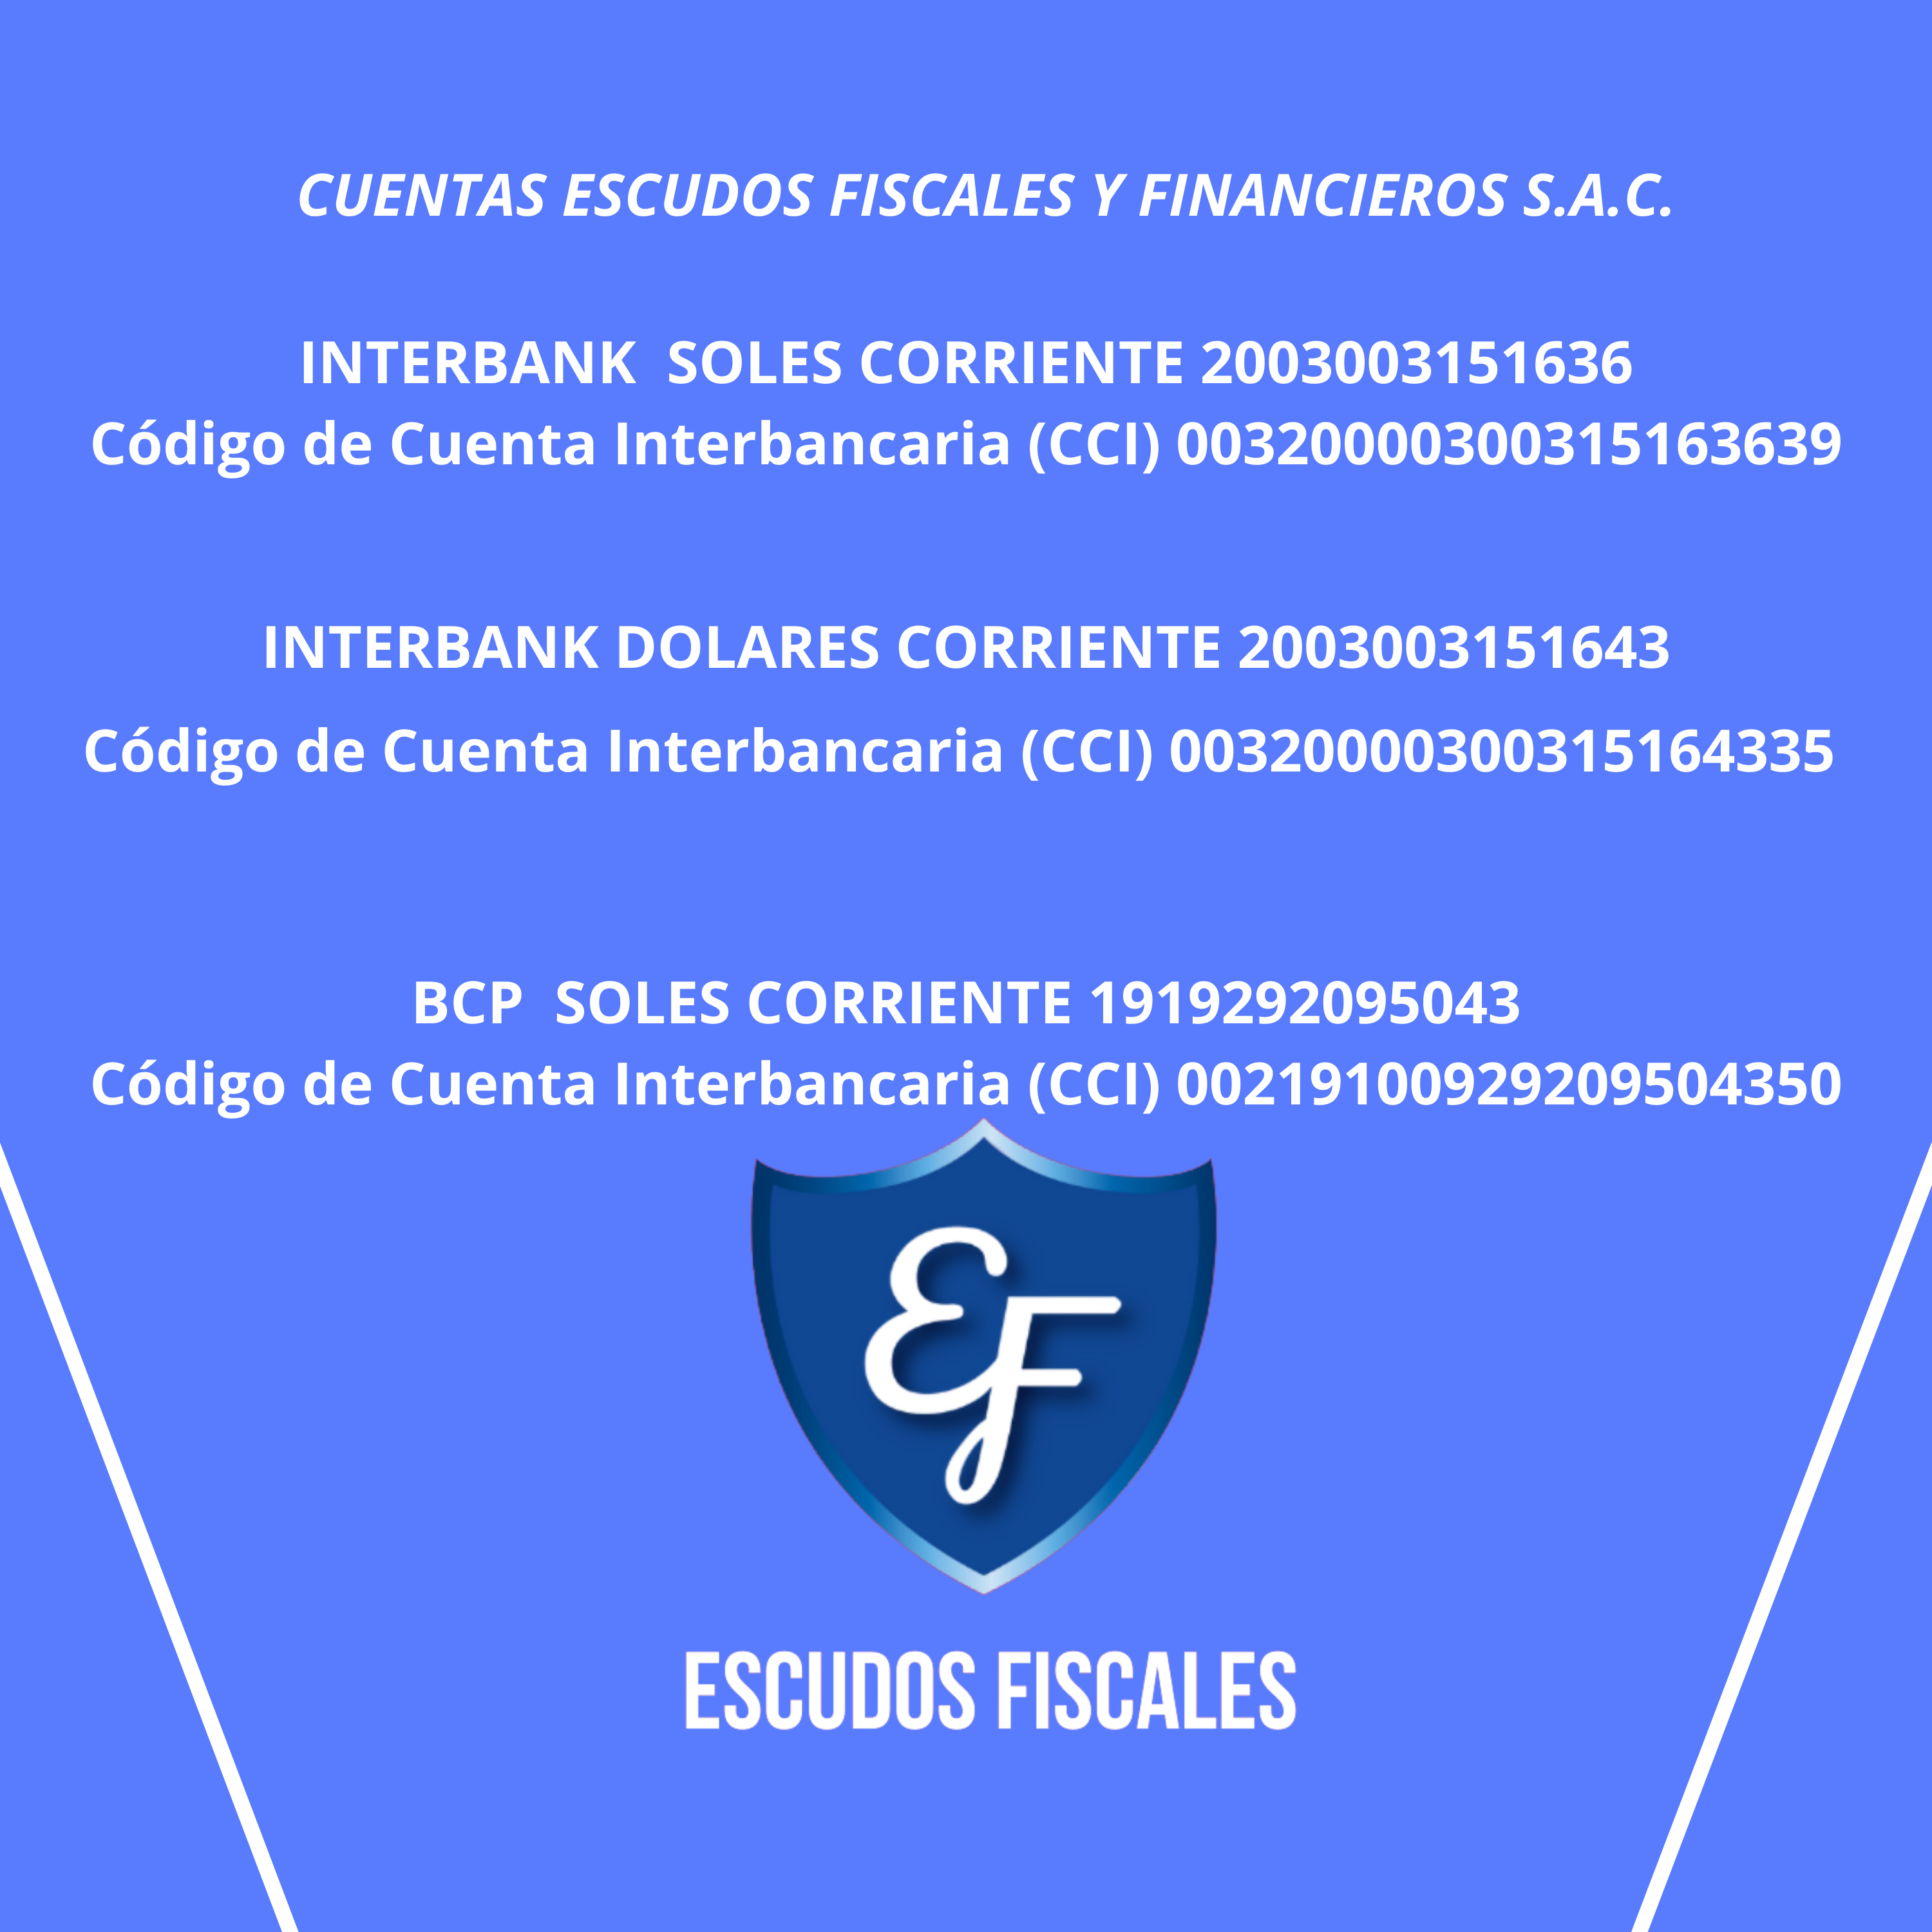 CUENTAS ESCUDOS FISCALES Y FINANCIEROS S.A.C.